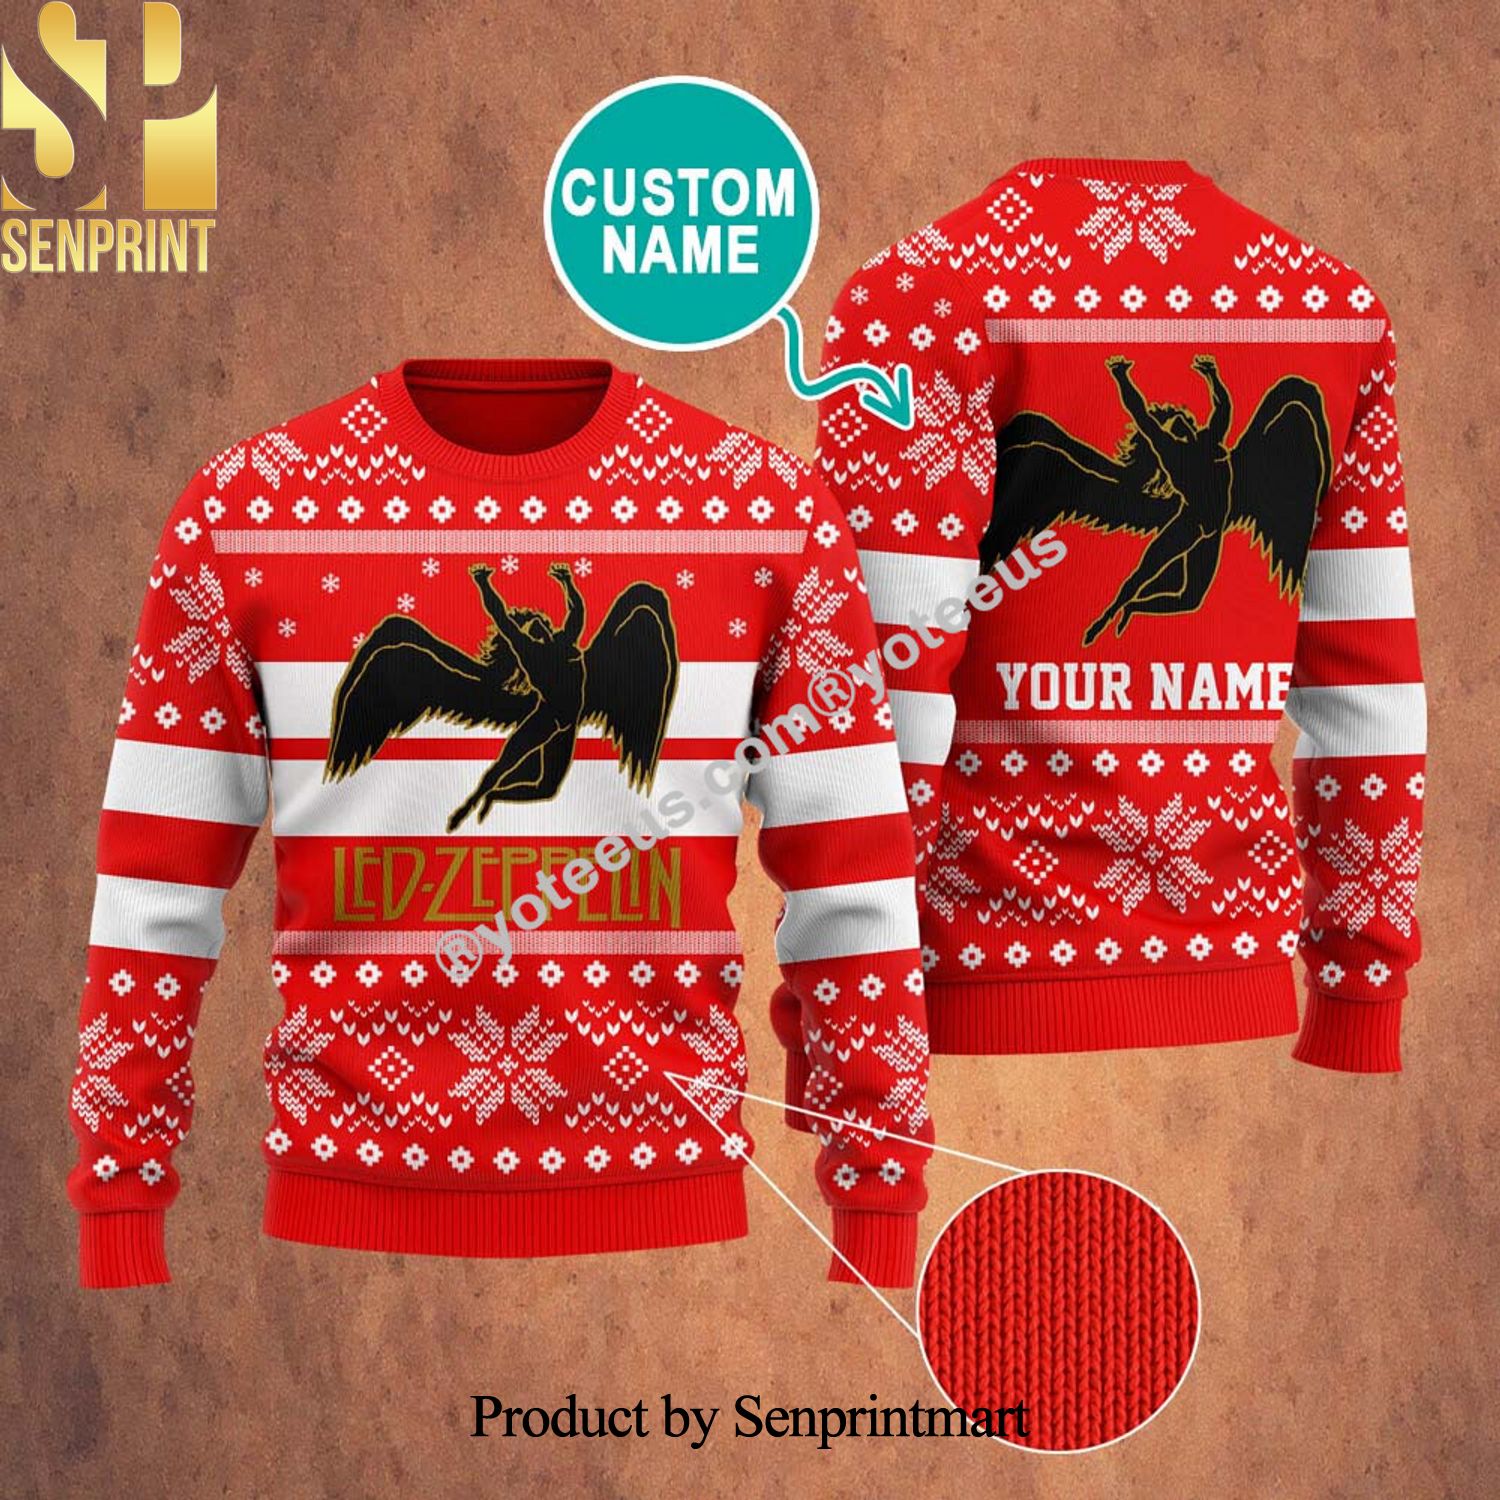 Ledzeppelin Rock Band Ugly Christmas Sweater